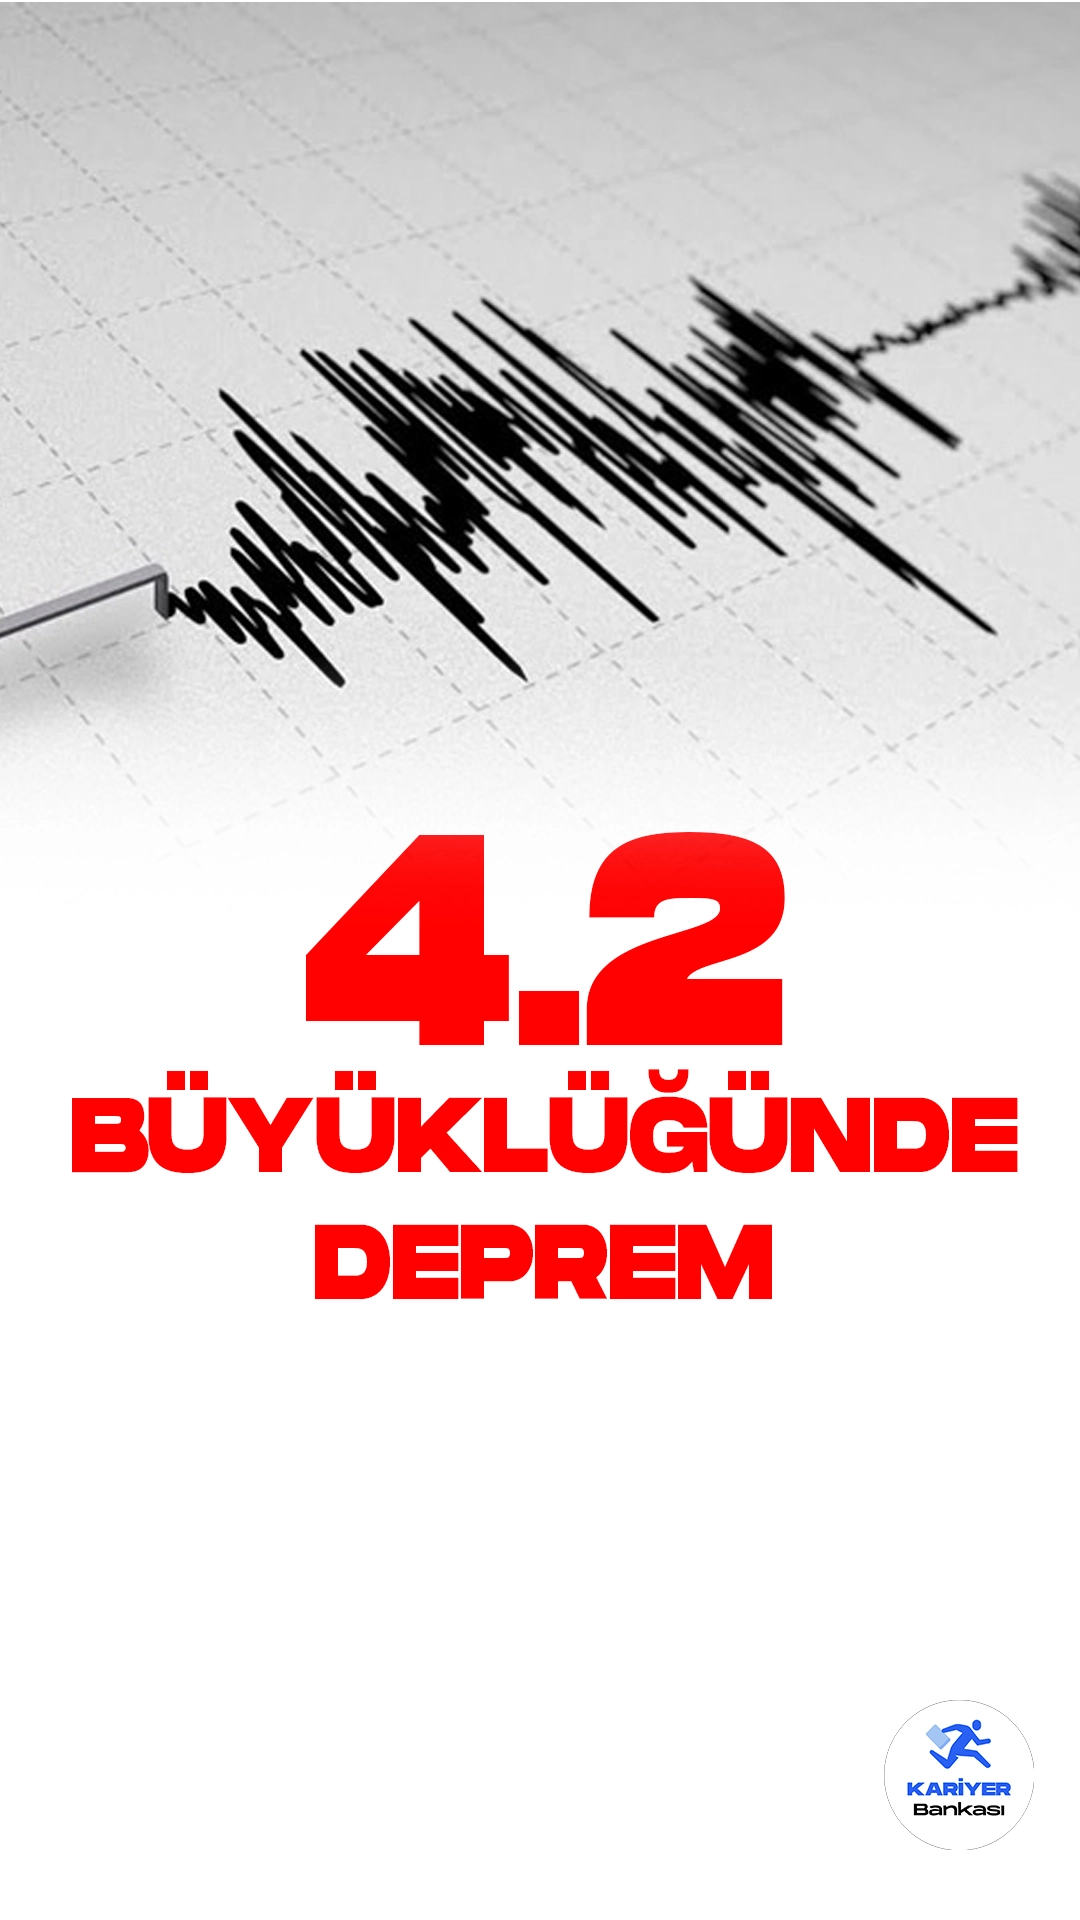 Diyarbakır'da 4.2 Büyüklüğünde Deprem Oldu. İçişleri Bakanlığı Afet ve Acil Durum Yönetimi Başkanlığı resmi sayfasından yayımlanan son dakika bilgisine göre, Diyarbakır'ın Hani ilçesinde 4.2 büyüklüğünde deprem meydana geldi.